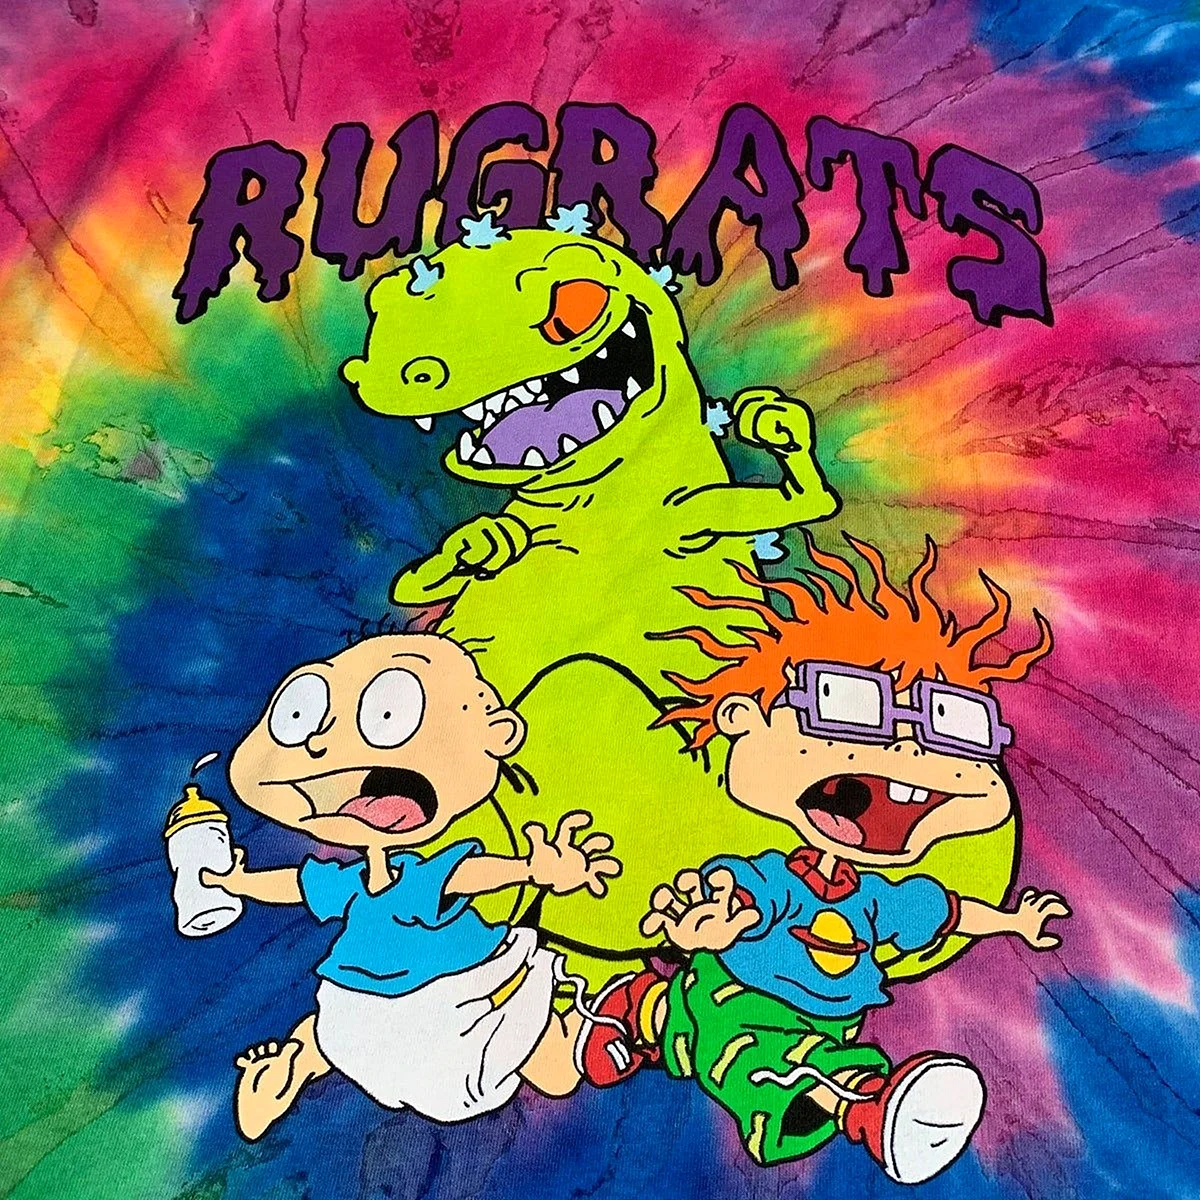 Rugrats Wallpaper